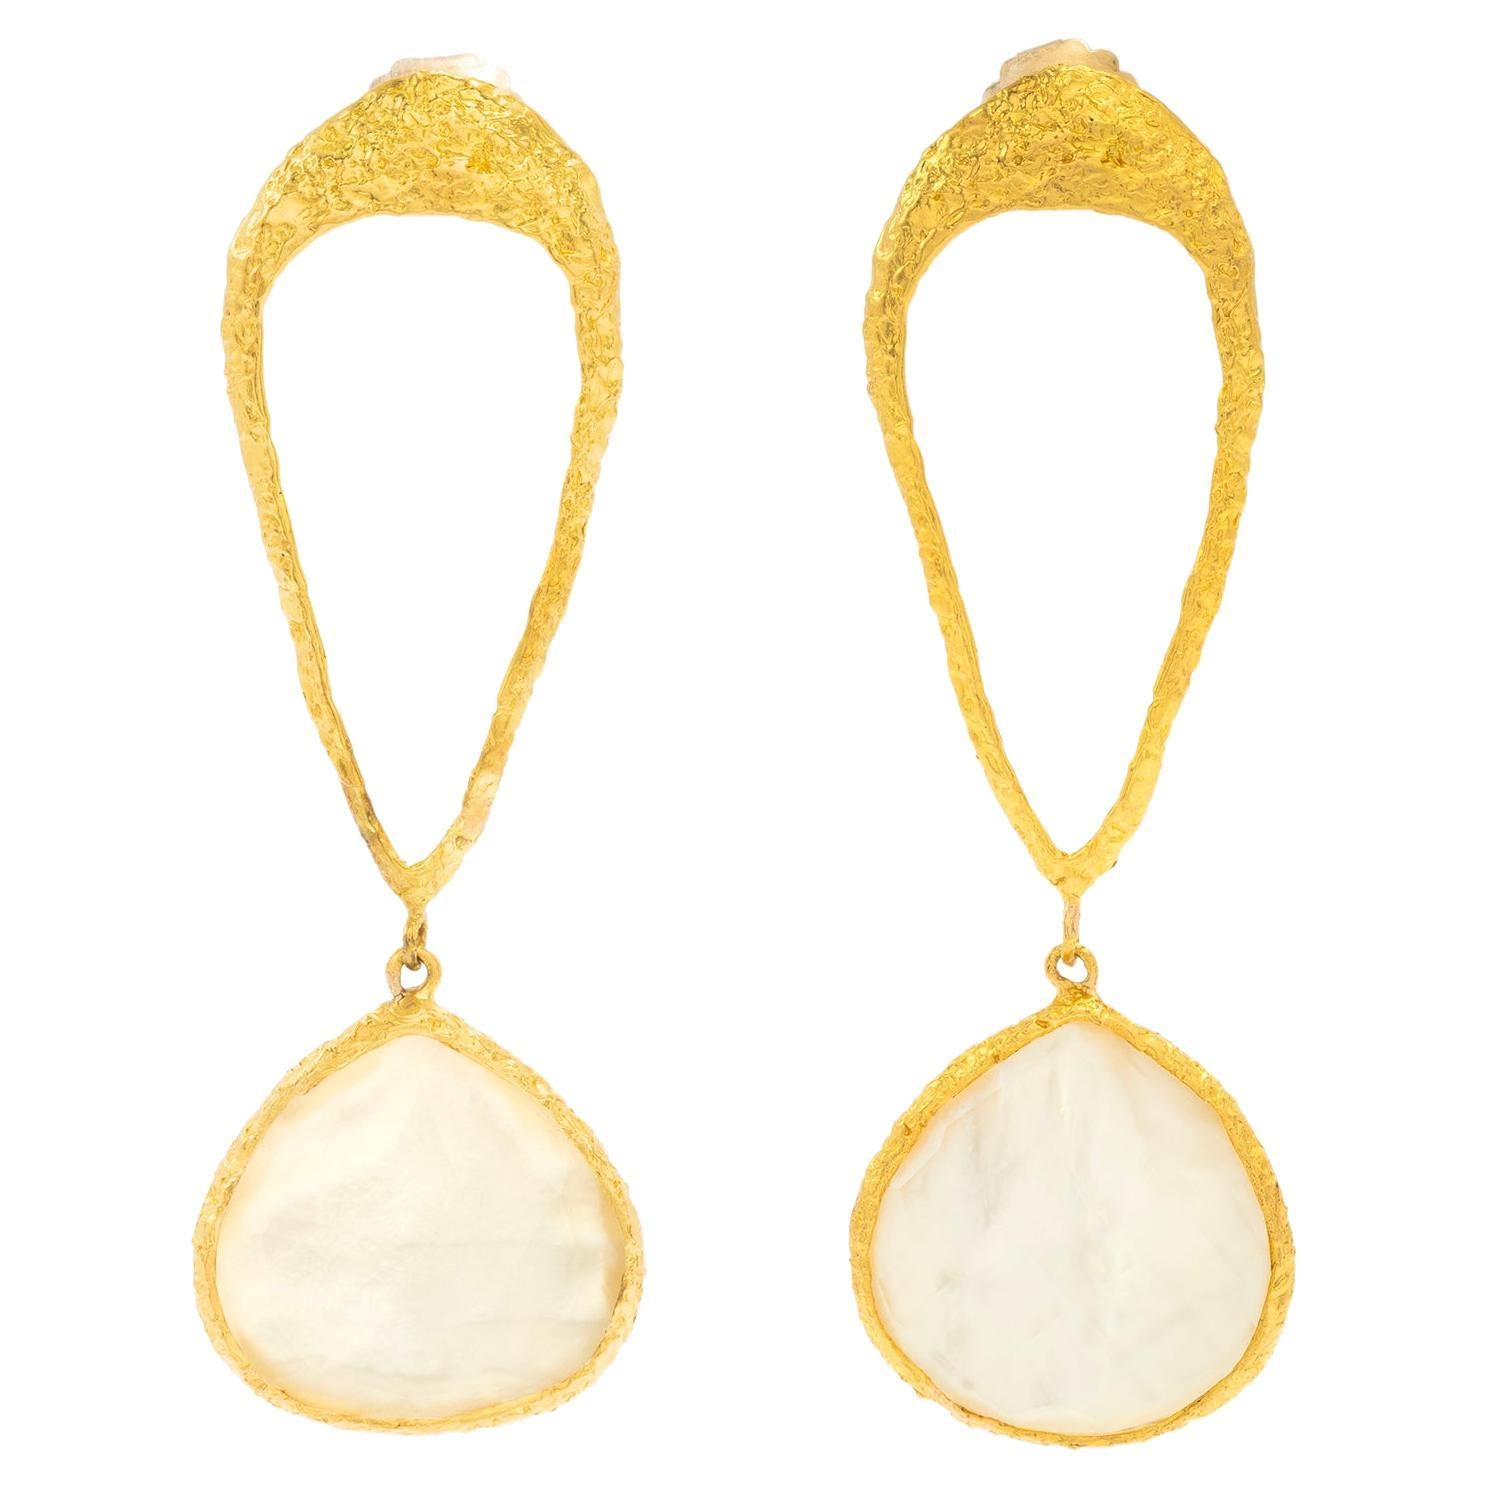 Boucles d'oreilles en forme de goutte en or 22 carats, perles et cristal Signature Soleil, par Tagili